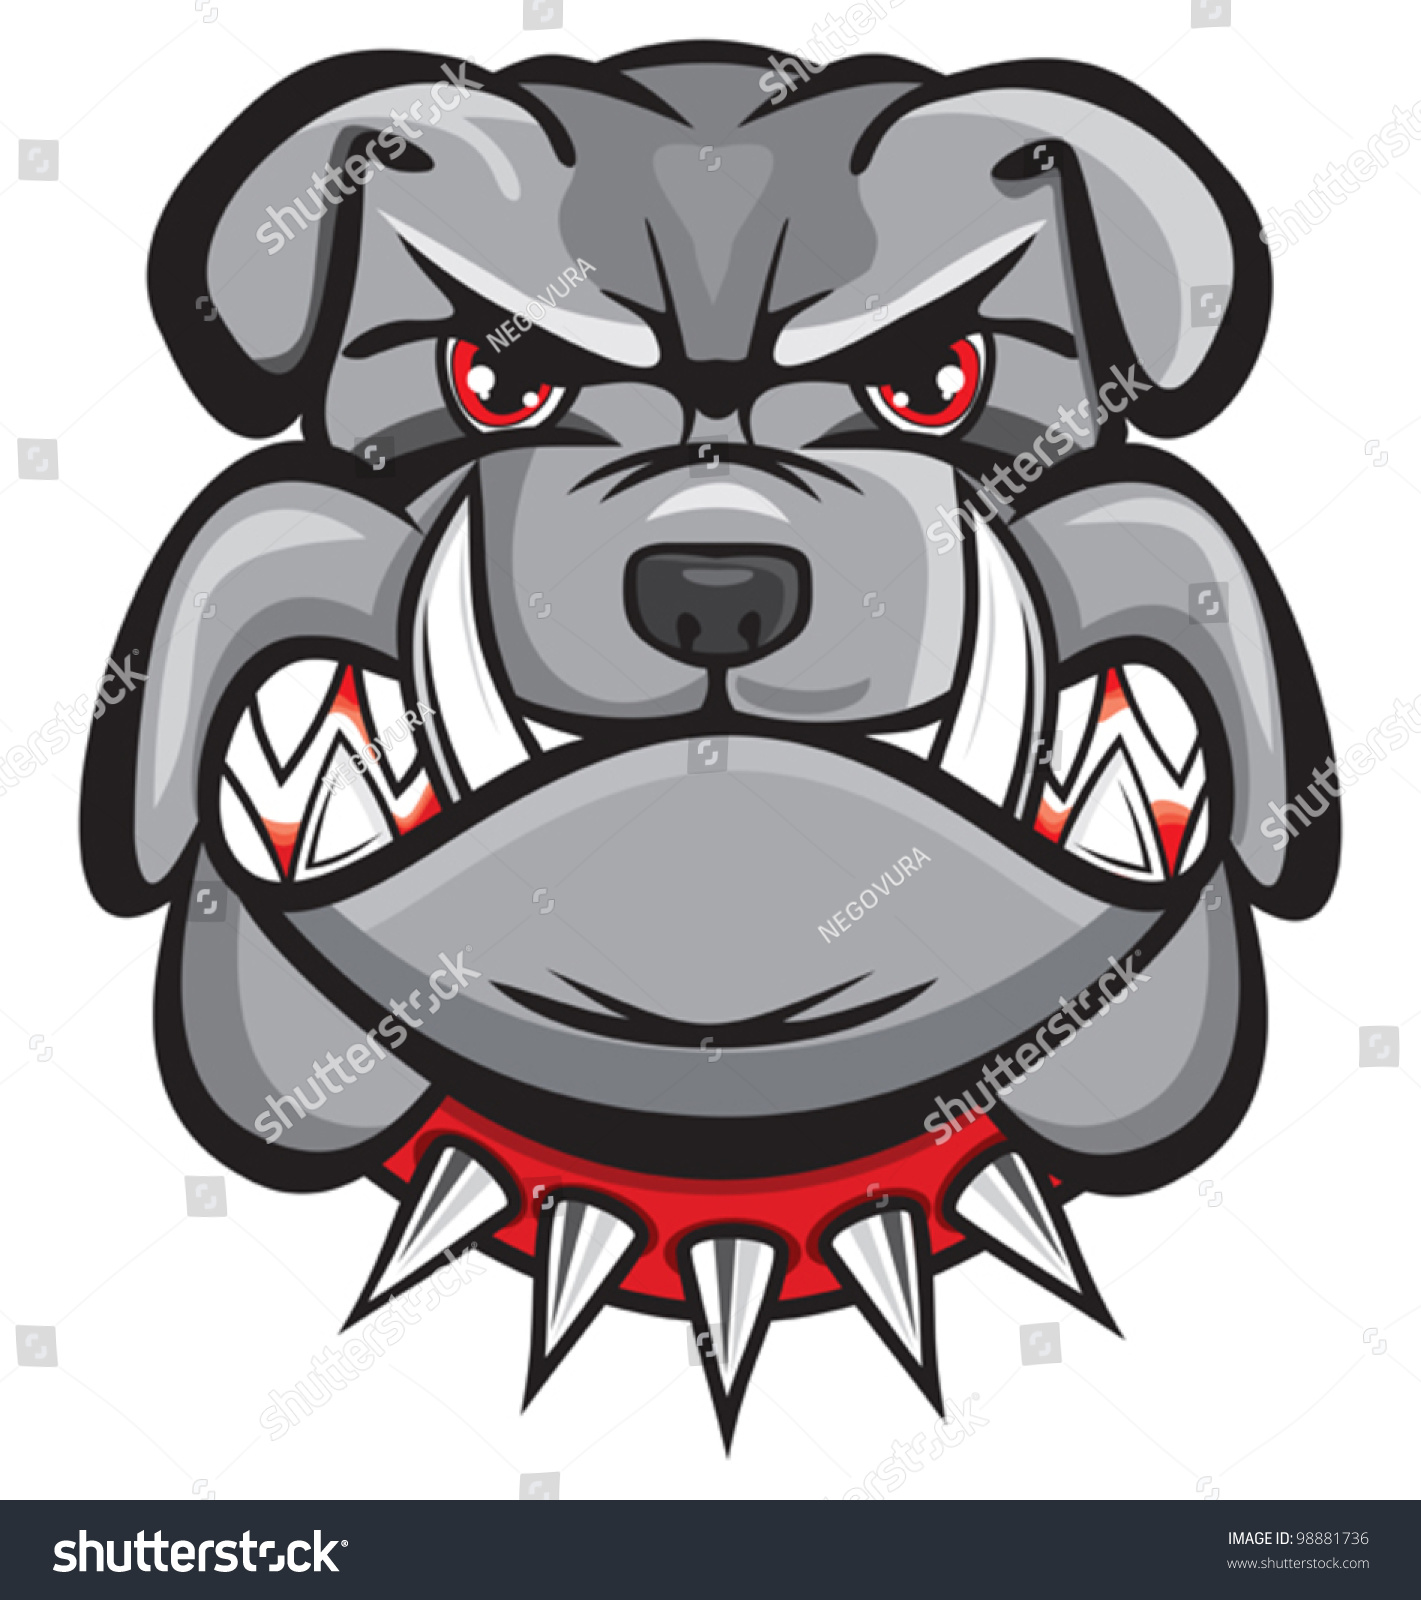 35+ Gambar anjing bulldog kartun info